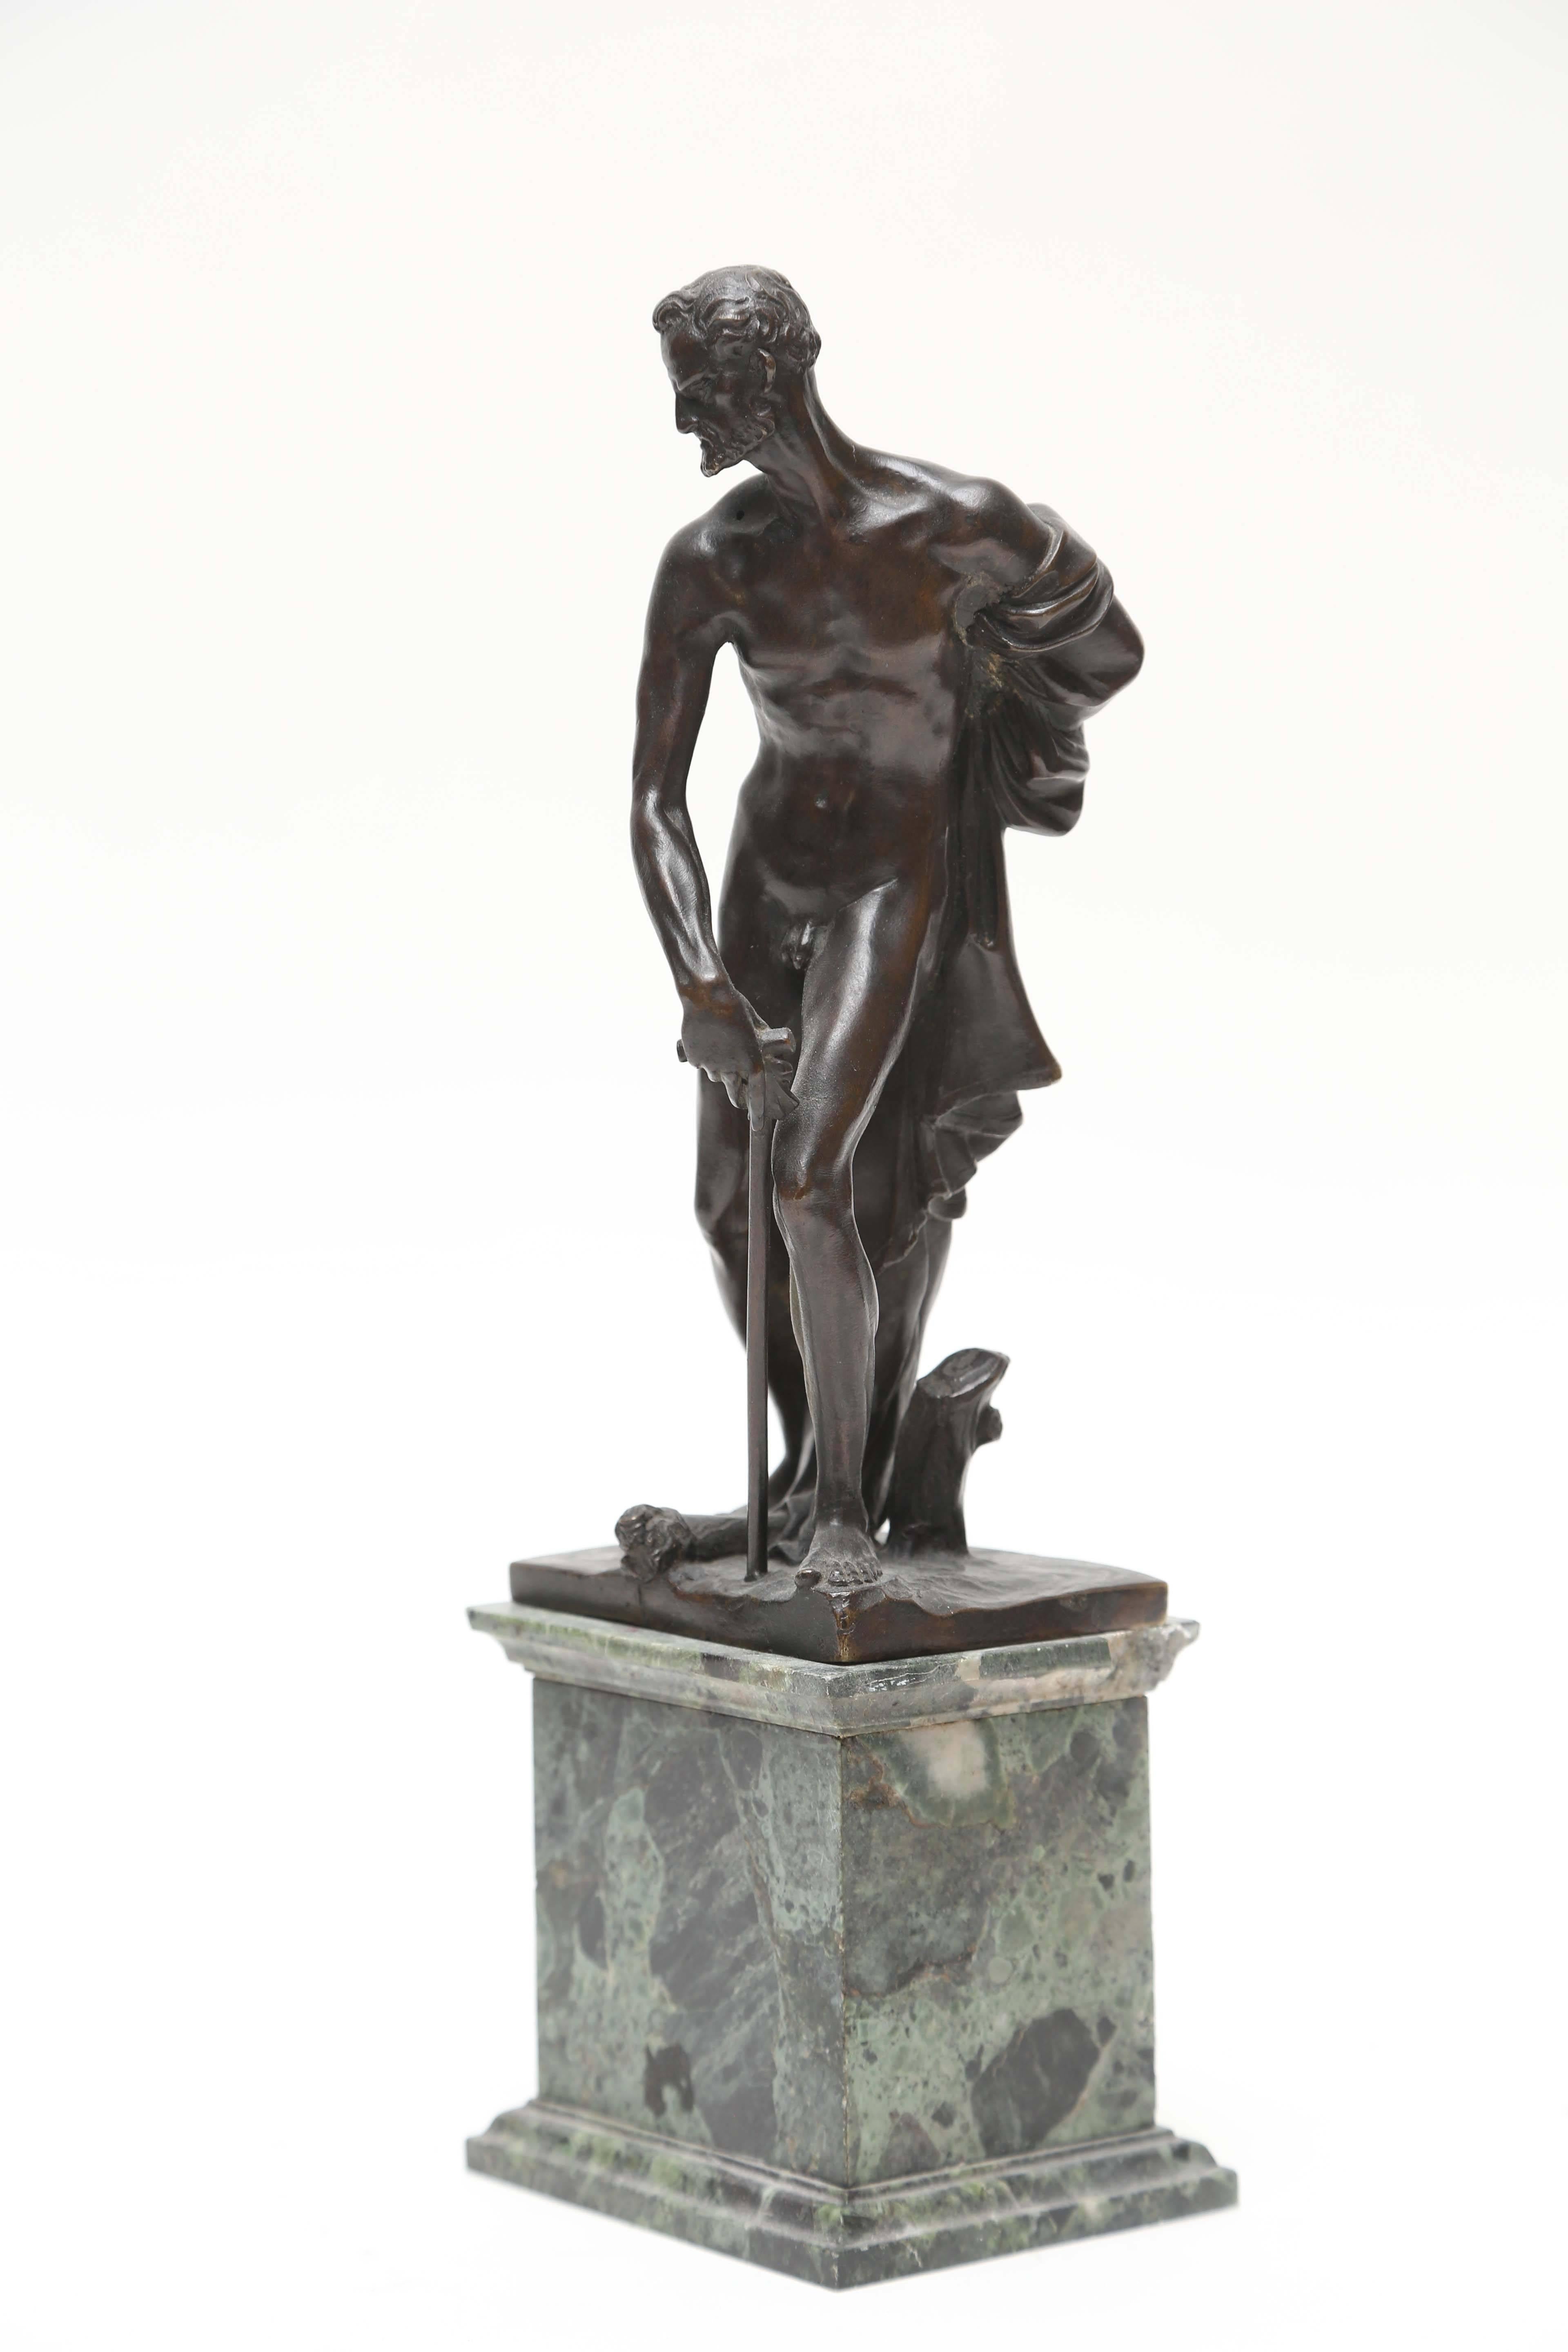 Statuette en bronze de saint Jérôme, ou saint Hiéronyme, réalisée à la manière du sculpteur vénitien Alessandro Vittorio (1525-1608) par la technique de fonte du bronze à la cire perdue, qui laisse un noyau creux. Le spécialiste viennois de l'art